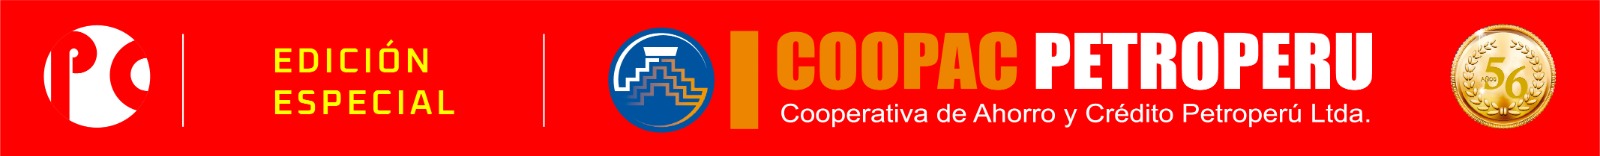 Banner Coopac Petroperu 19.07.24